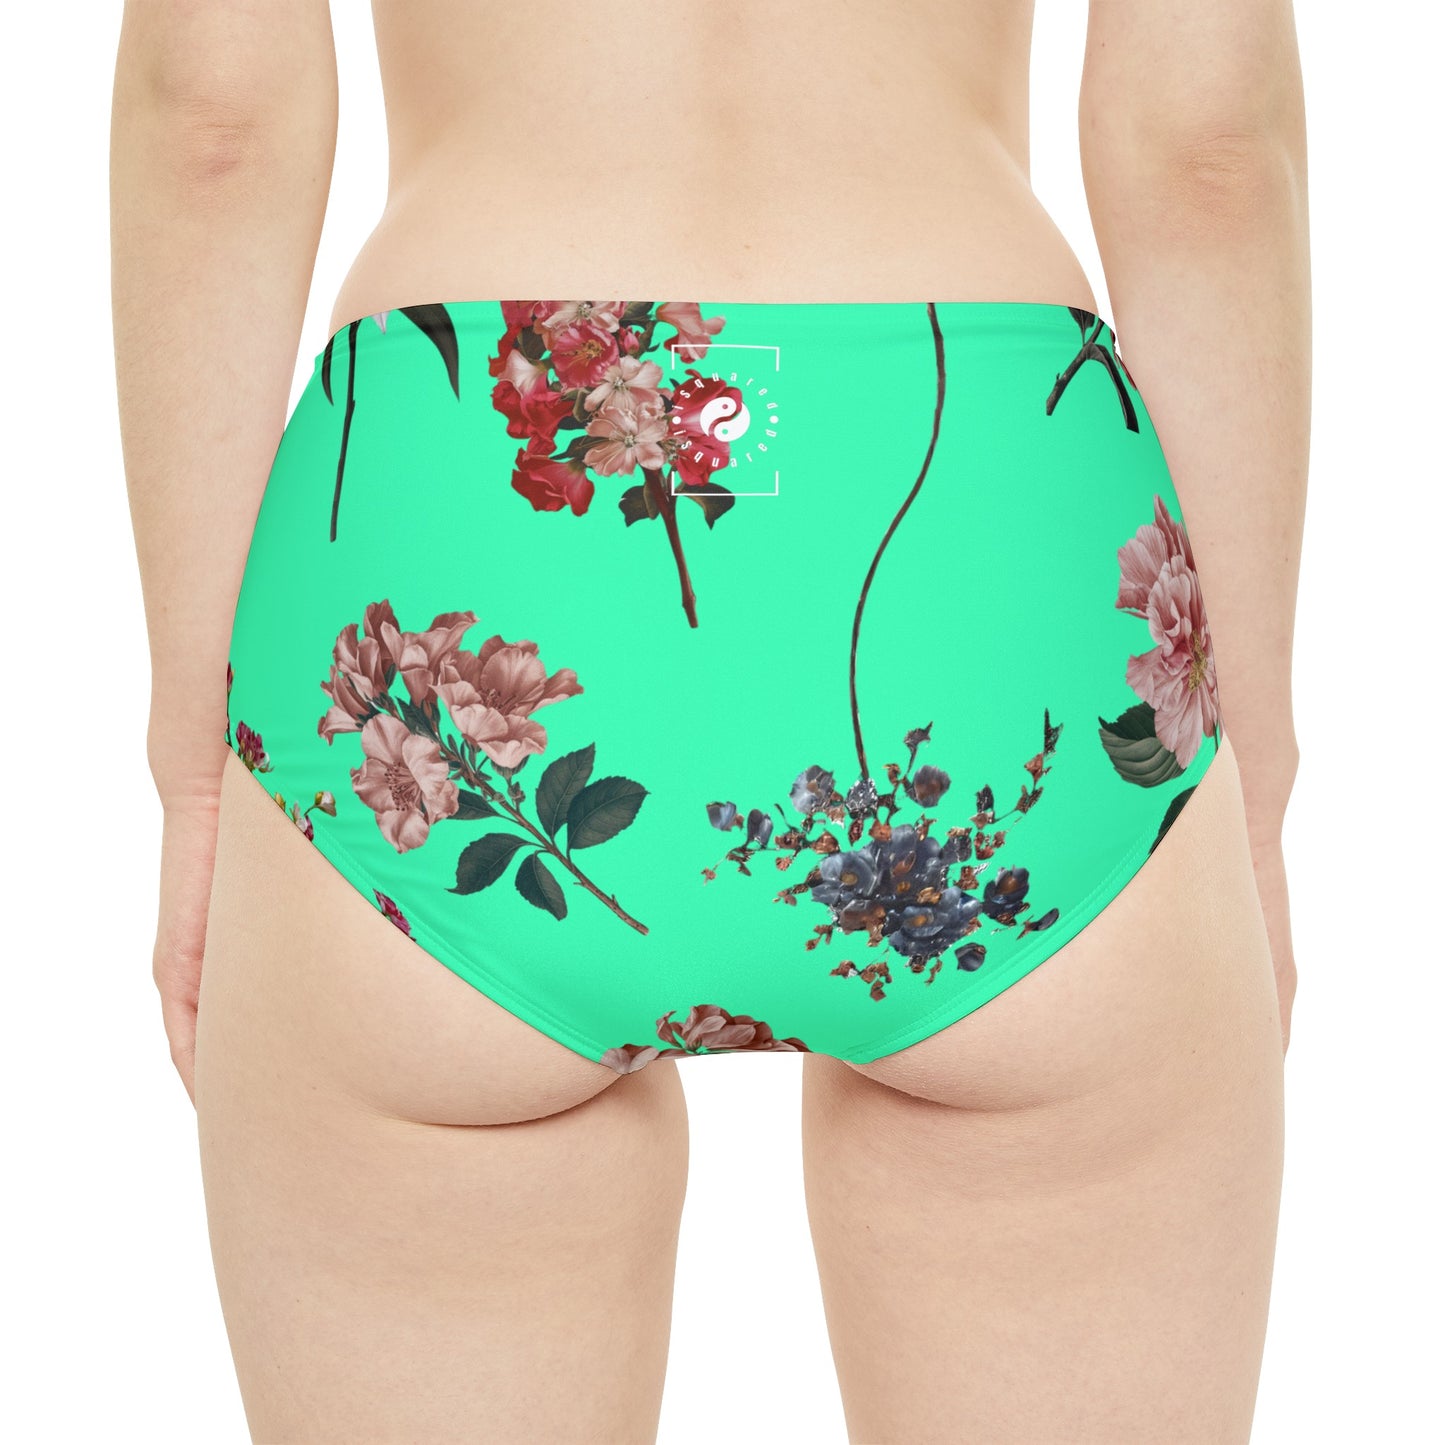 Botanicals on Turquoise - High Waisted Bikini Bottom